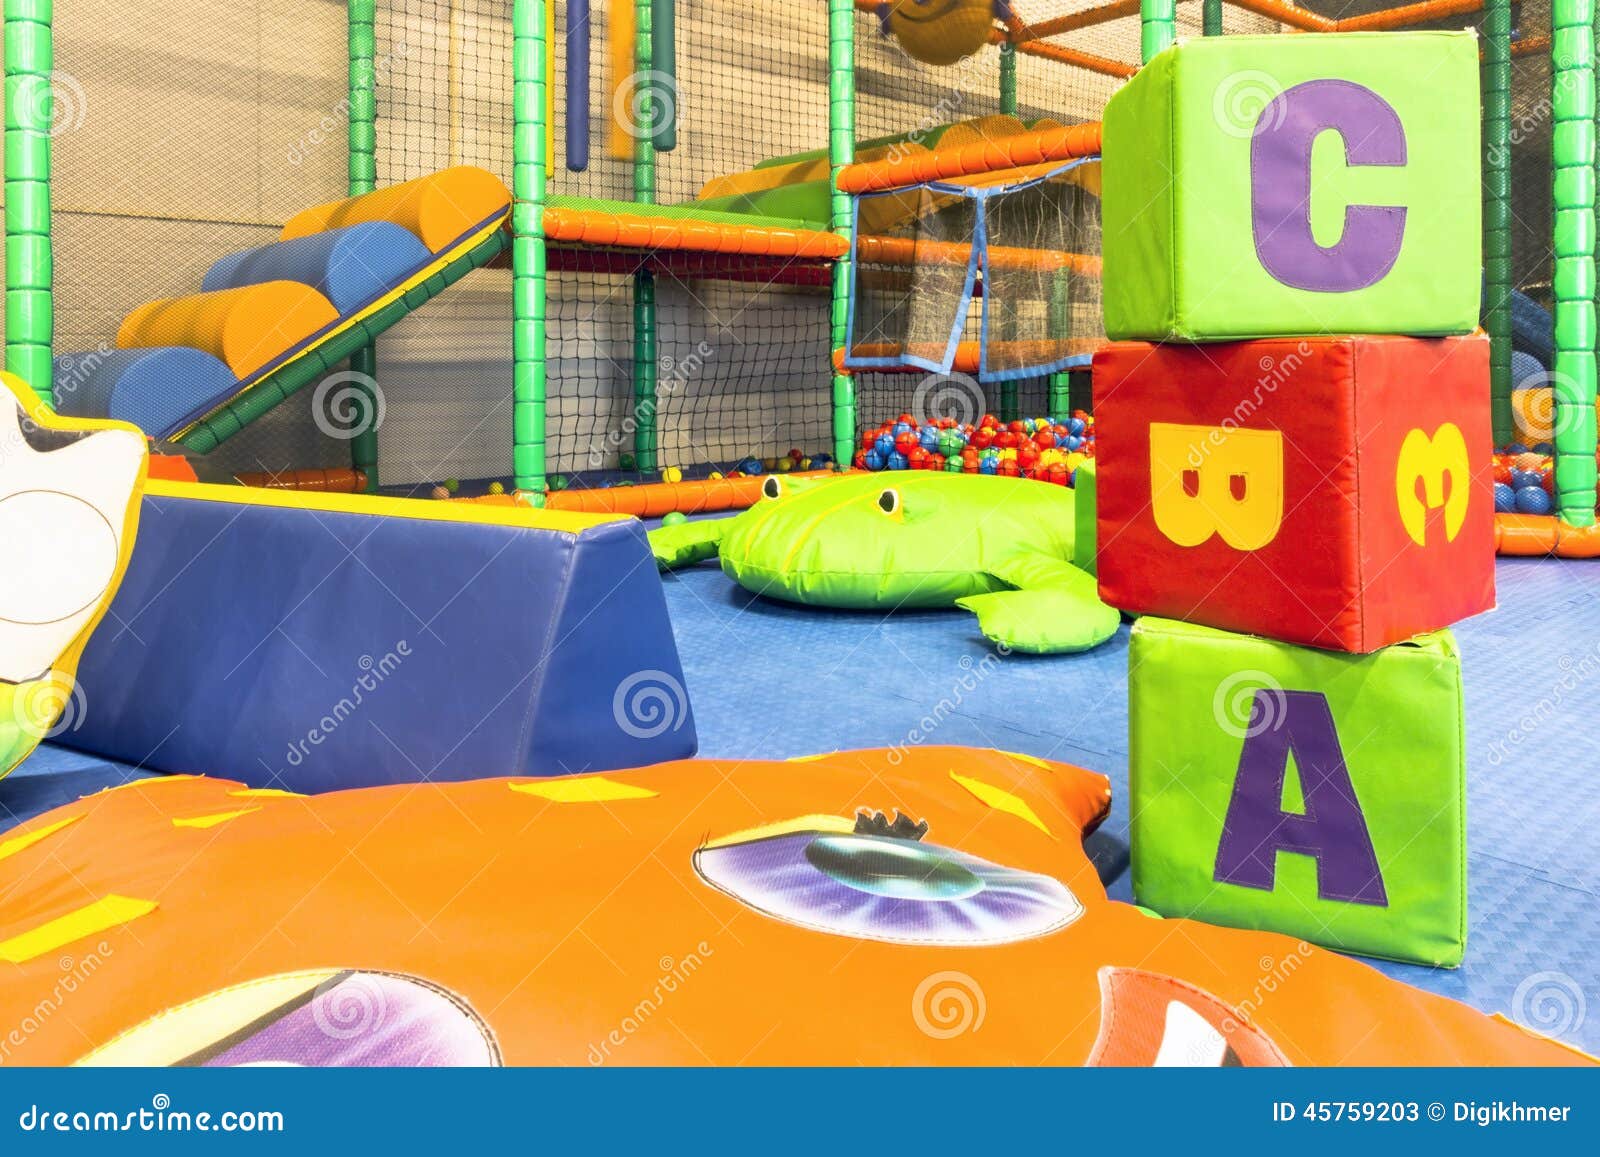 abc cubes indoor playground